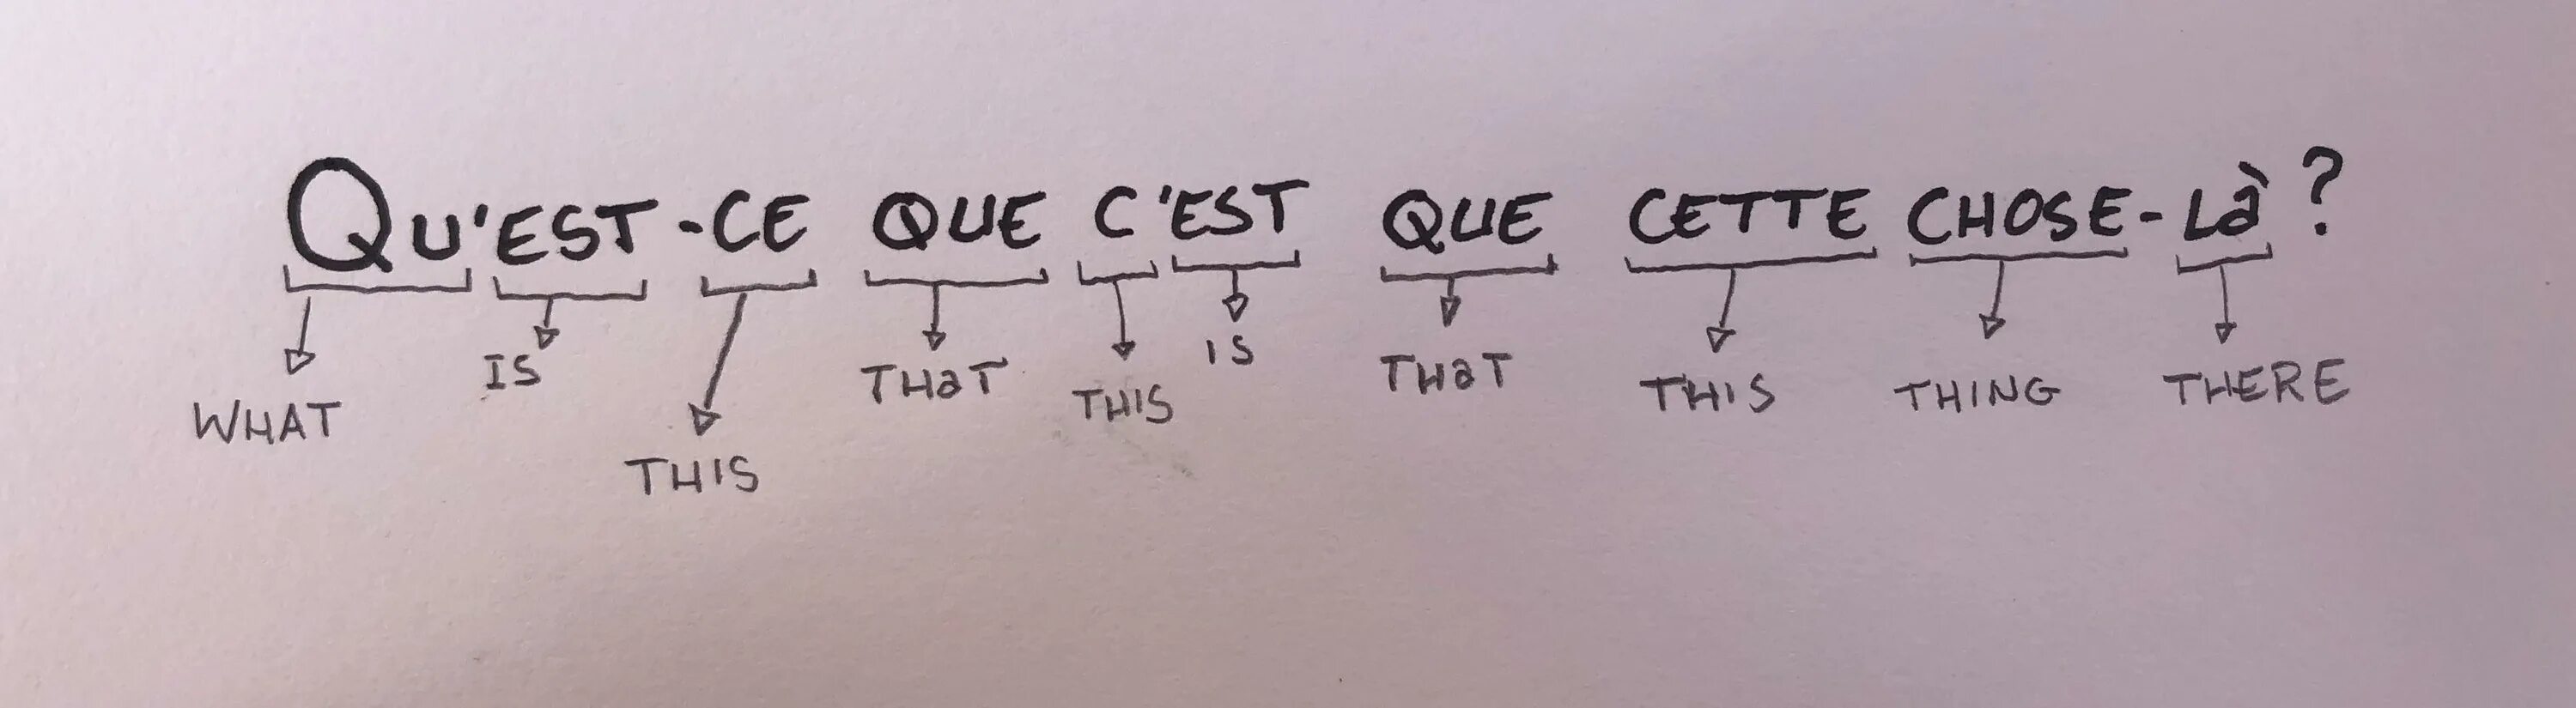 Est ce que nous. Qu'est-ce que c'est Мем. Вопросы во французском языке est-ce que. Est французский. Quest ce que c'est перевод.